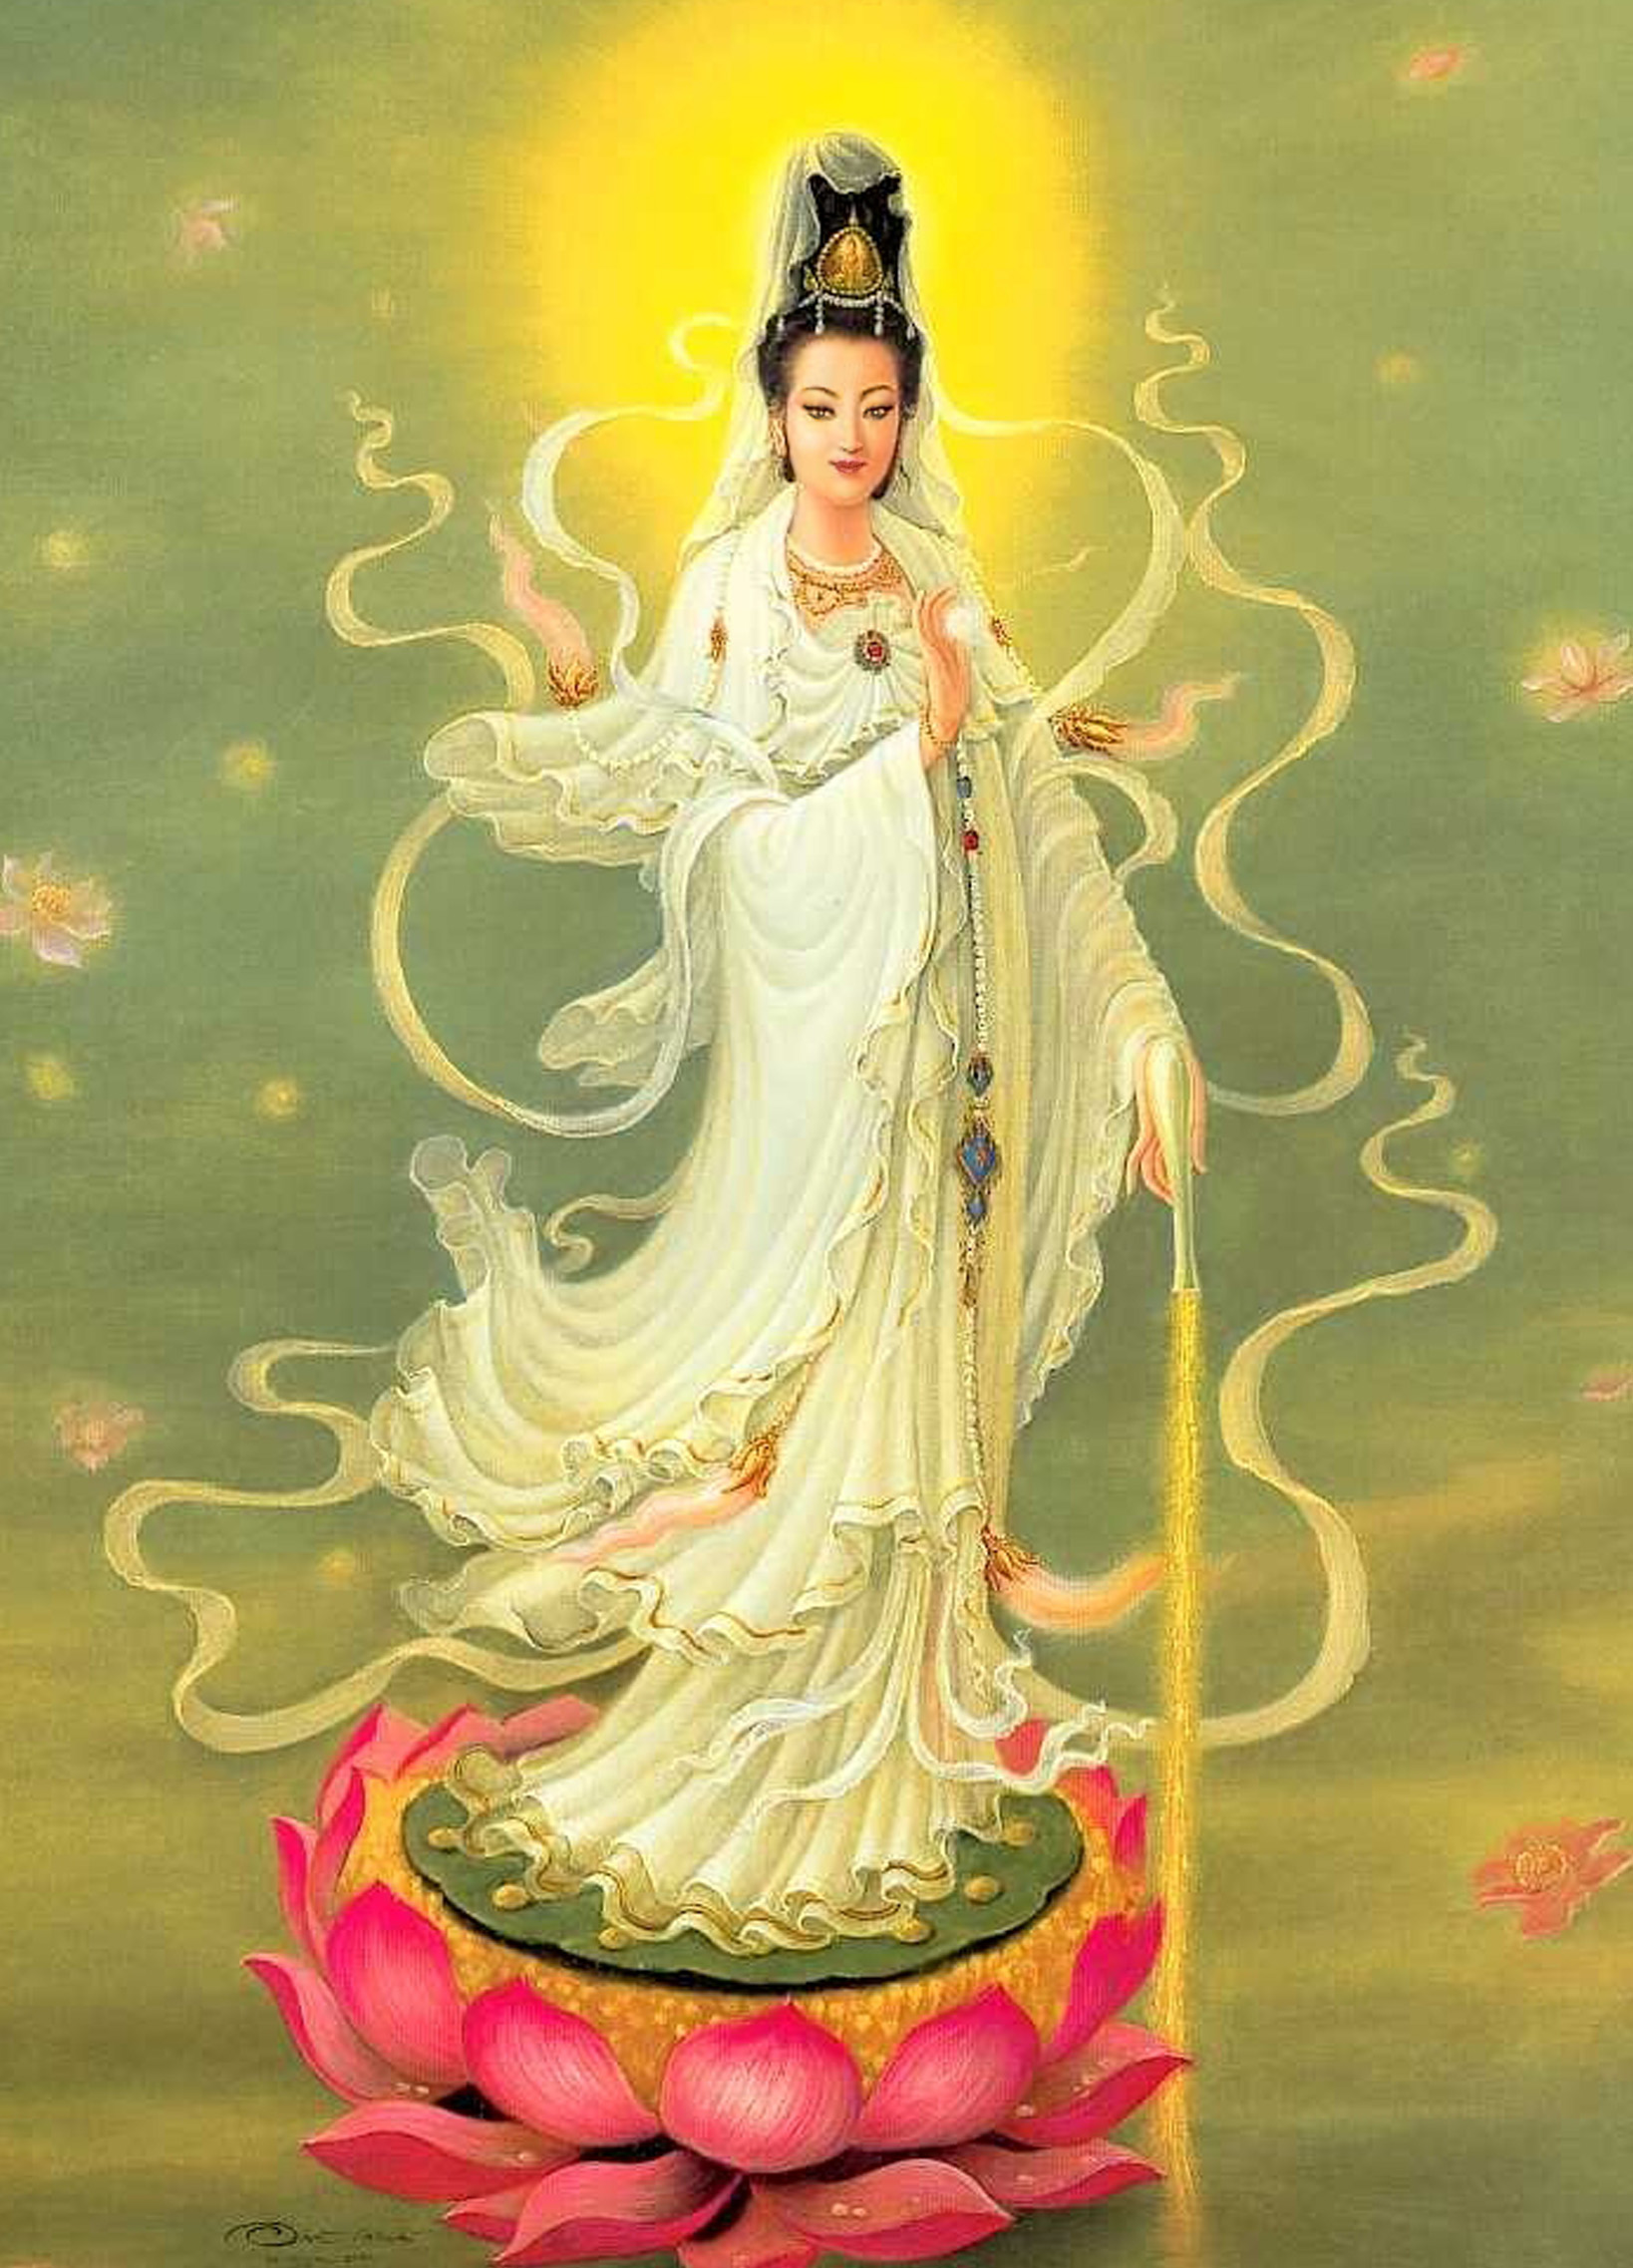 Goddess i love. Гуань Инь богиня. Гуань Инь богиня милосердия Китай. Богиня милосердия Гуань Инь.